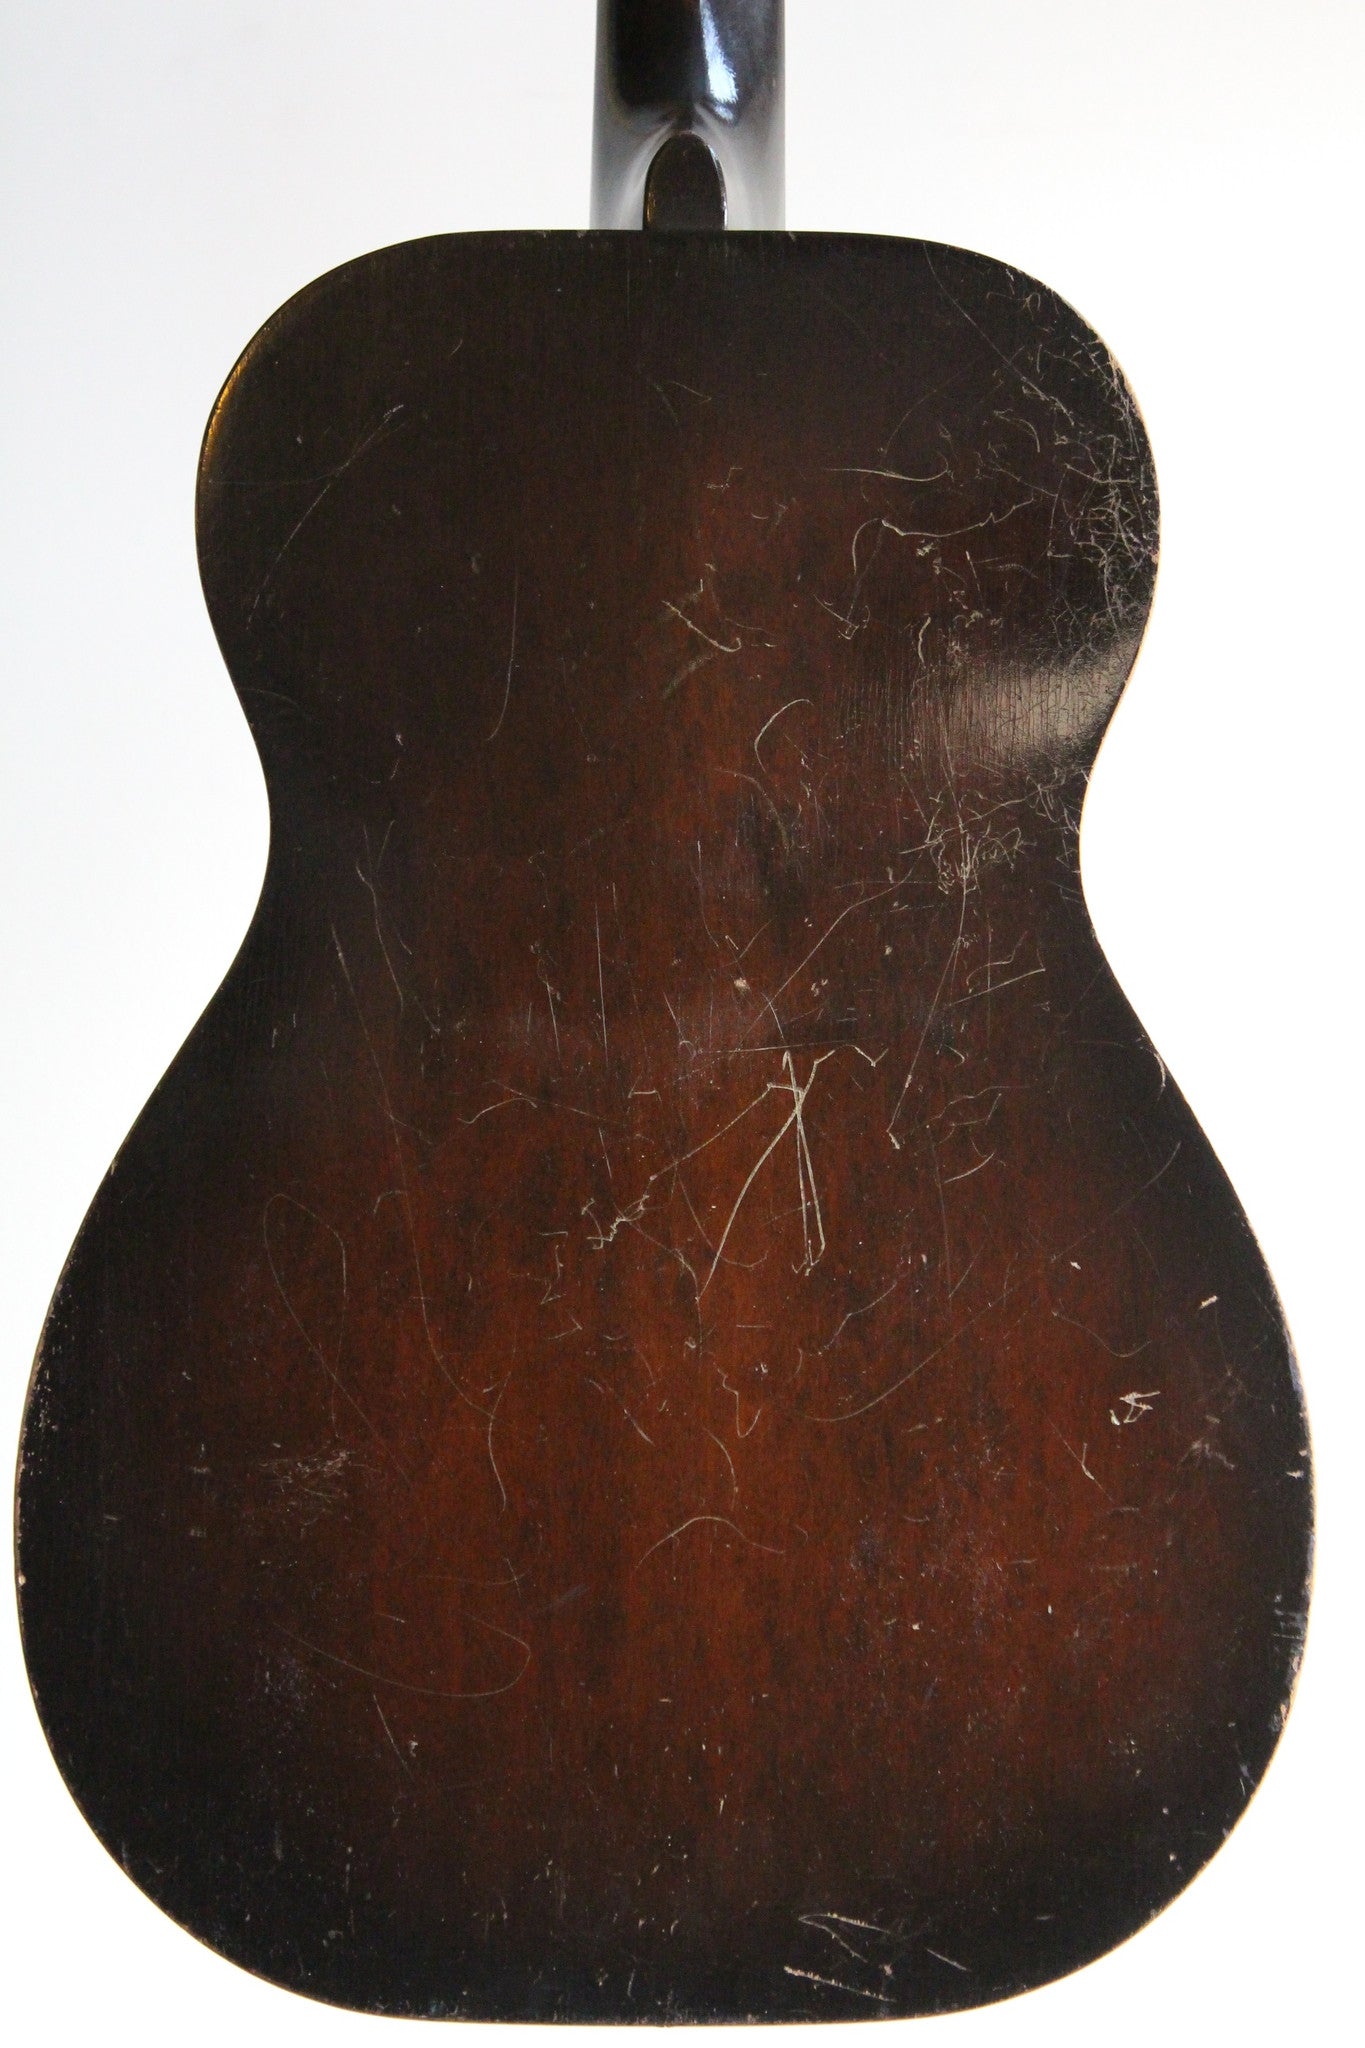 1929 Dobro Model 55 - Vintage Guitars